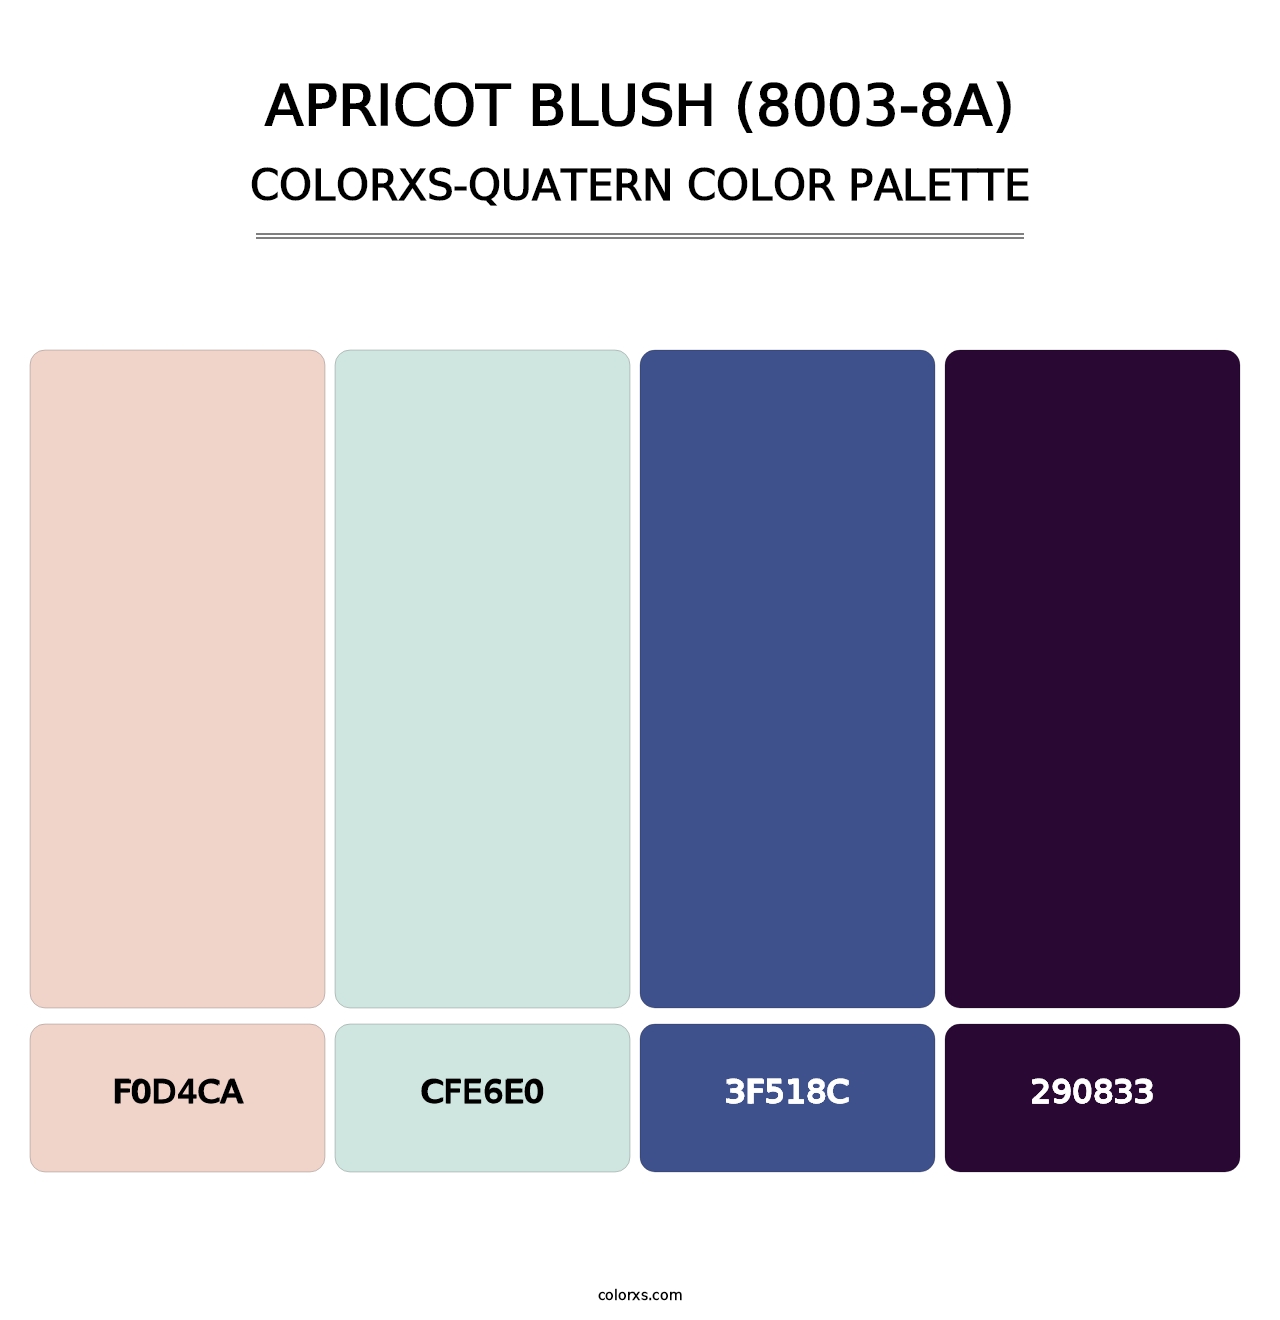 Apricot Blush (8003-8A) - Colorxs Quatern Palette